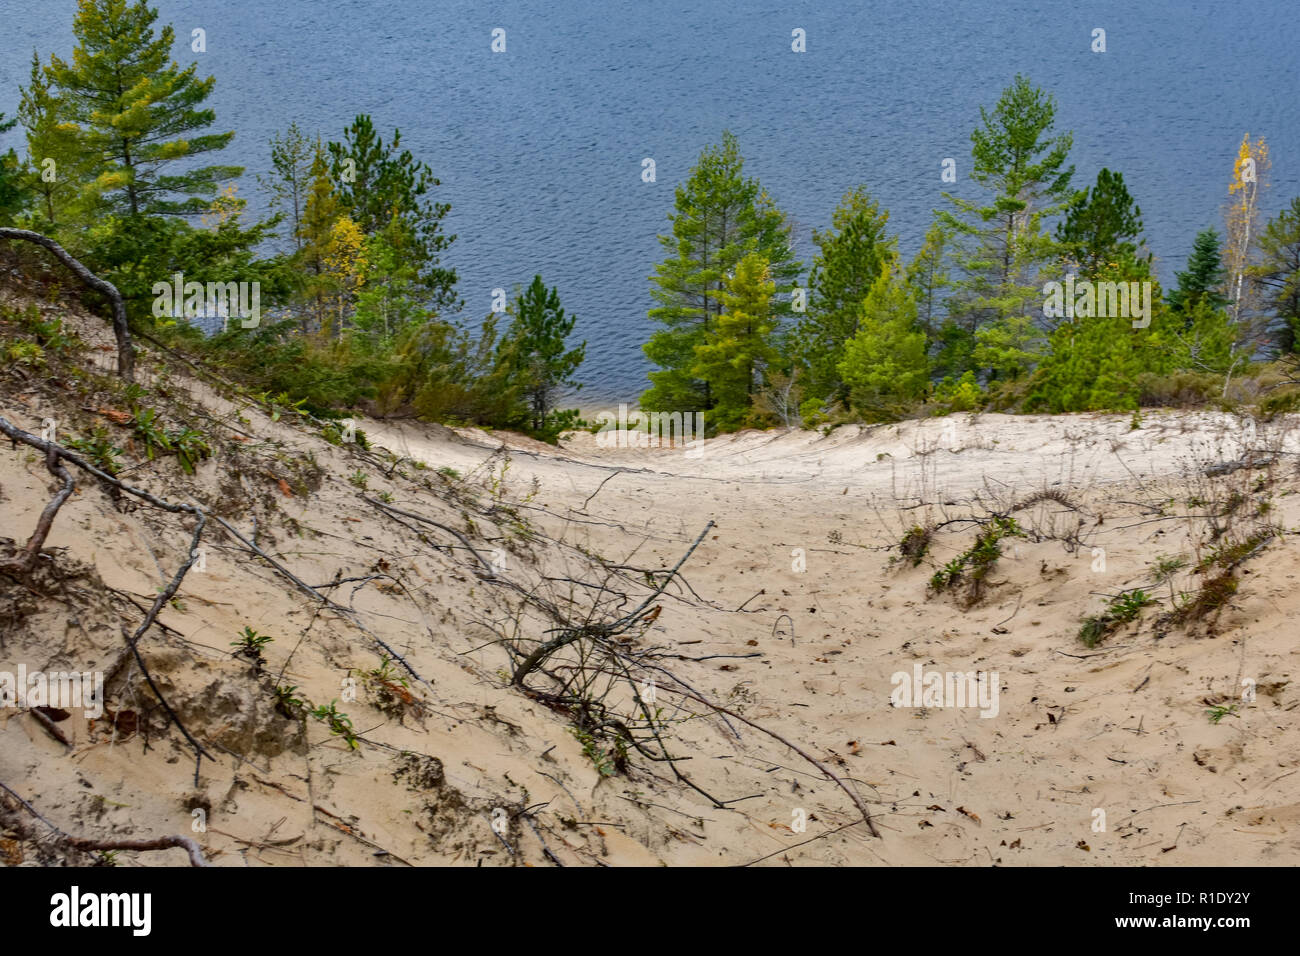 Vue depuis le sommet d'une dune de sable, avec des pins à la rivière/lac banque. Situé dans la forêt nationale de Huron, Michigan, Iron River. Banque D'Images